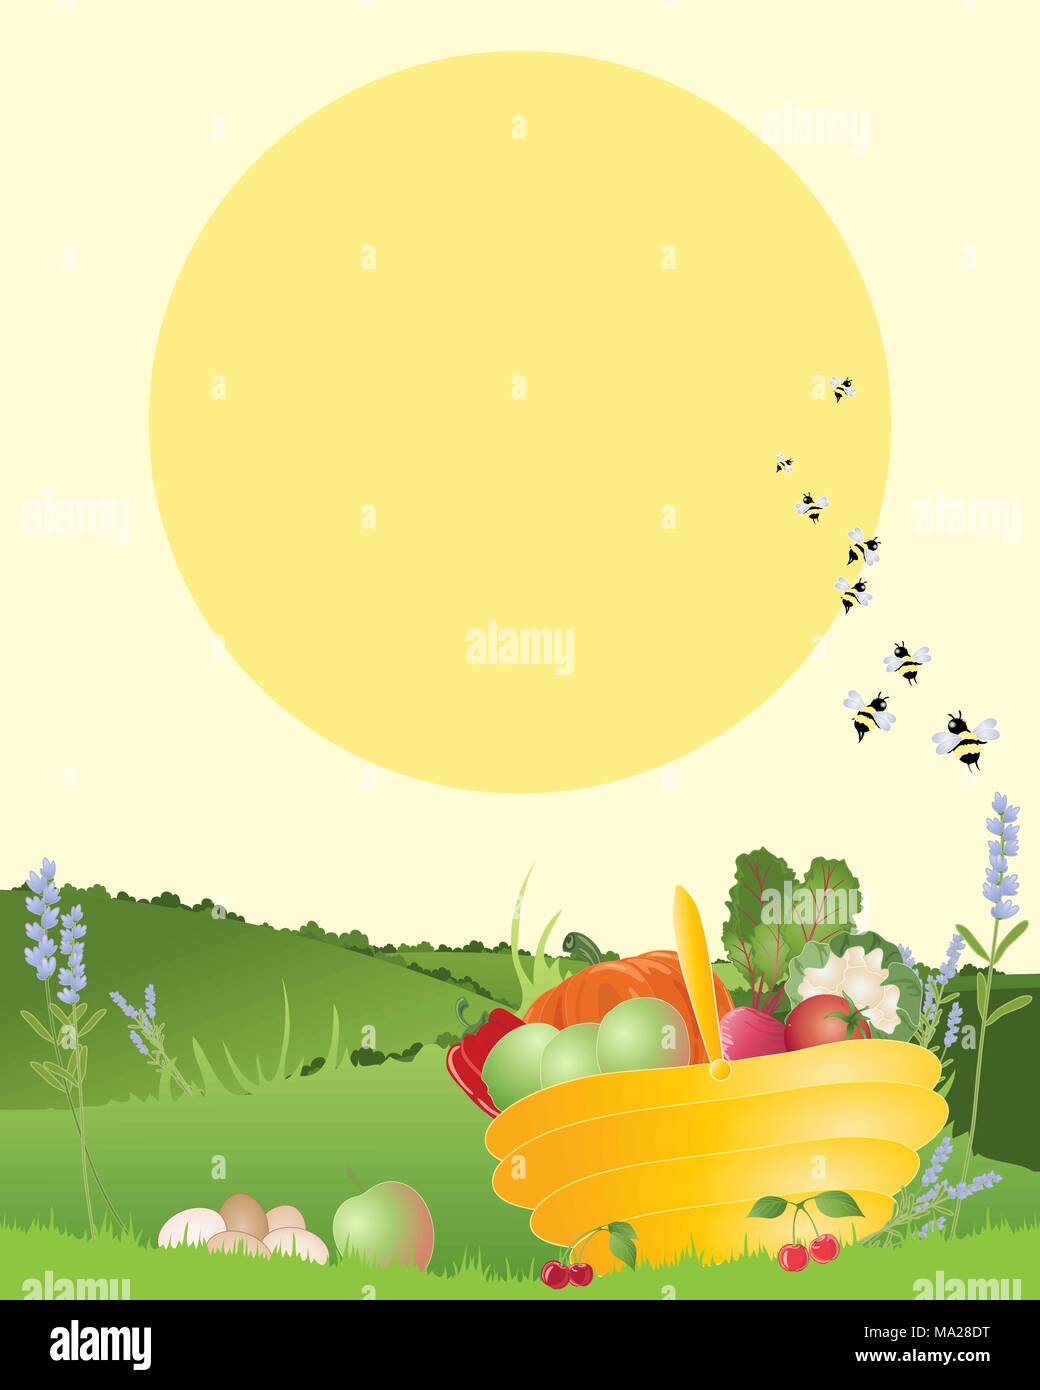 Ein Beispiel für einen Korb von selbst angebauten Obst und Gemüse in einer wunderschönen Landschaft mit einem großen gelben Sonne im Sommer Stock Vektor